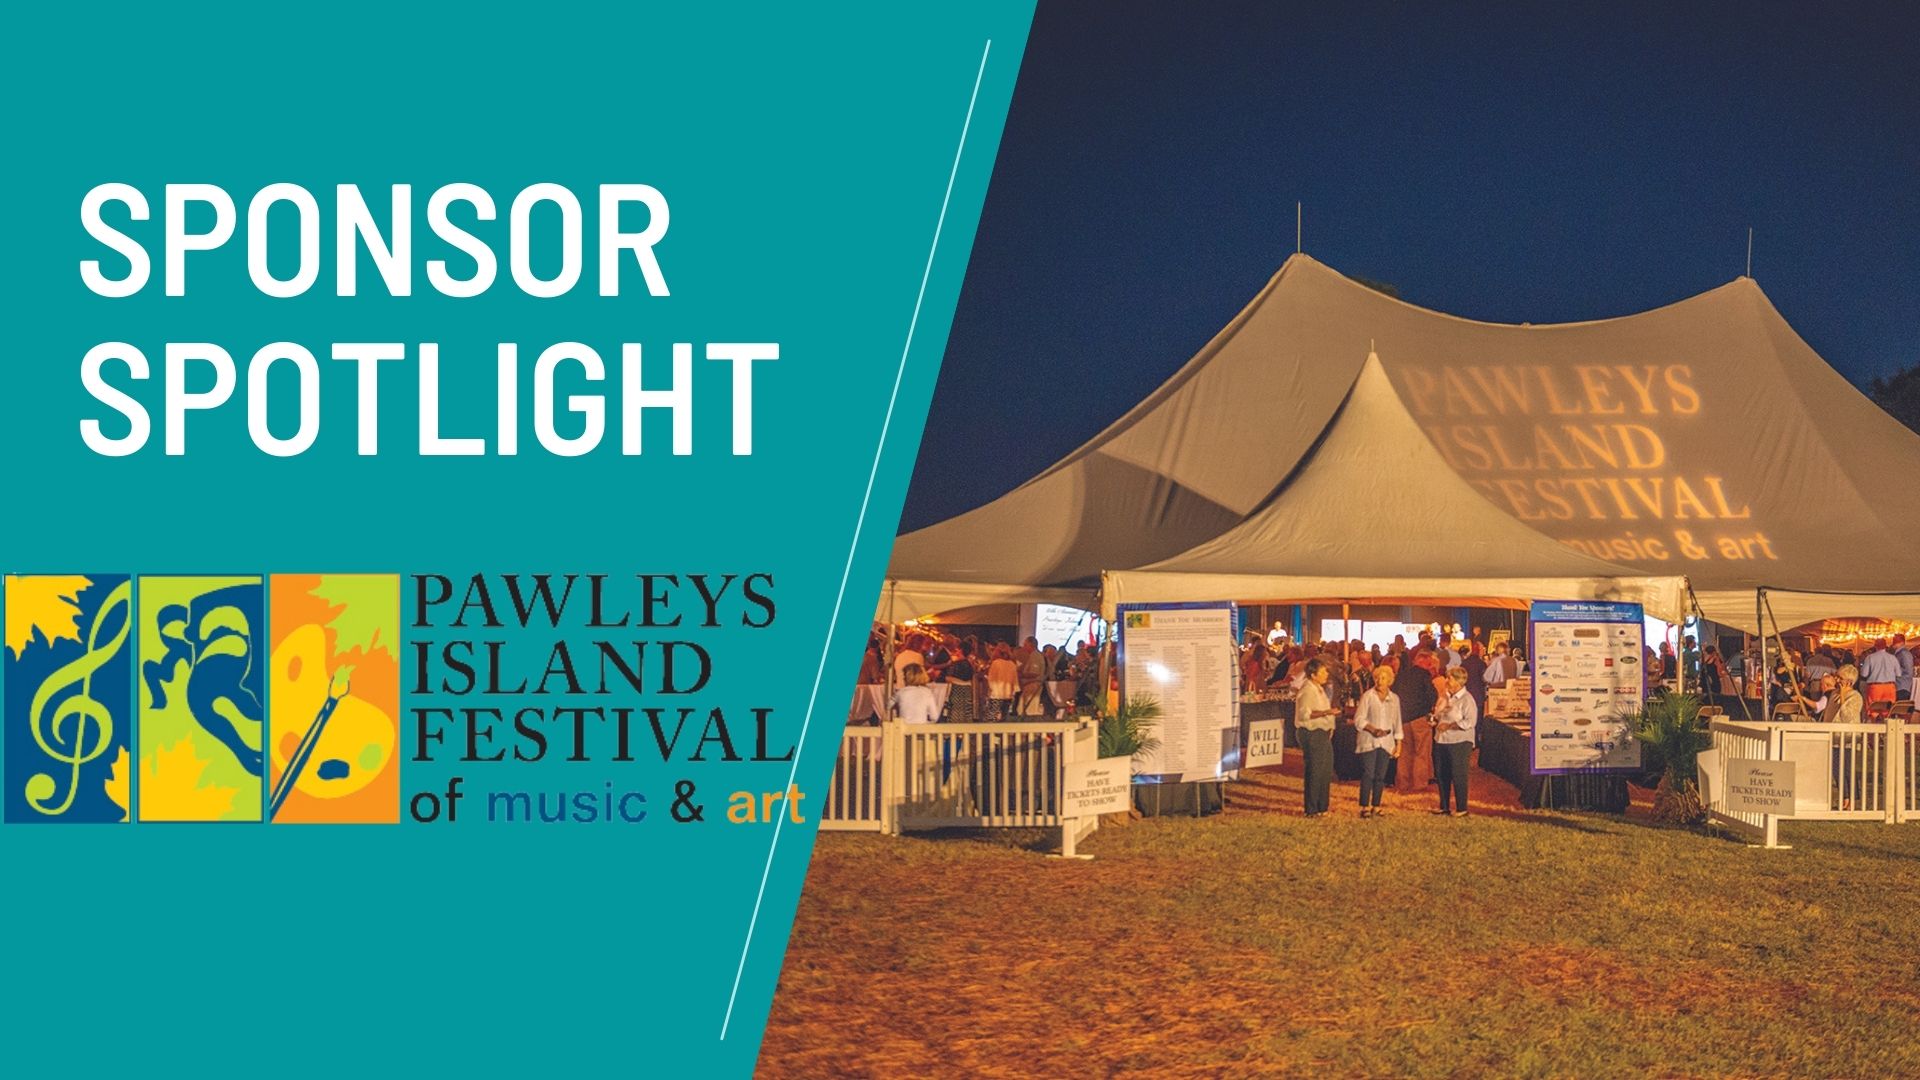 Pawleys Island Festival of Music & Art September 2021 Stories